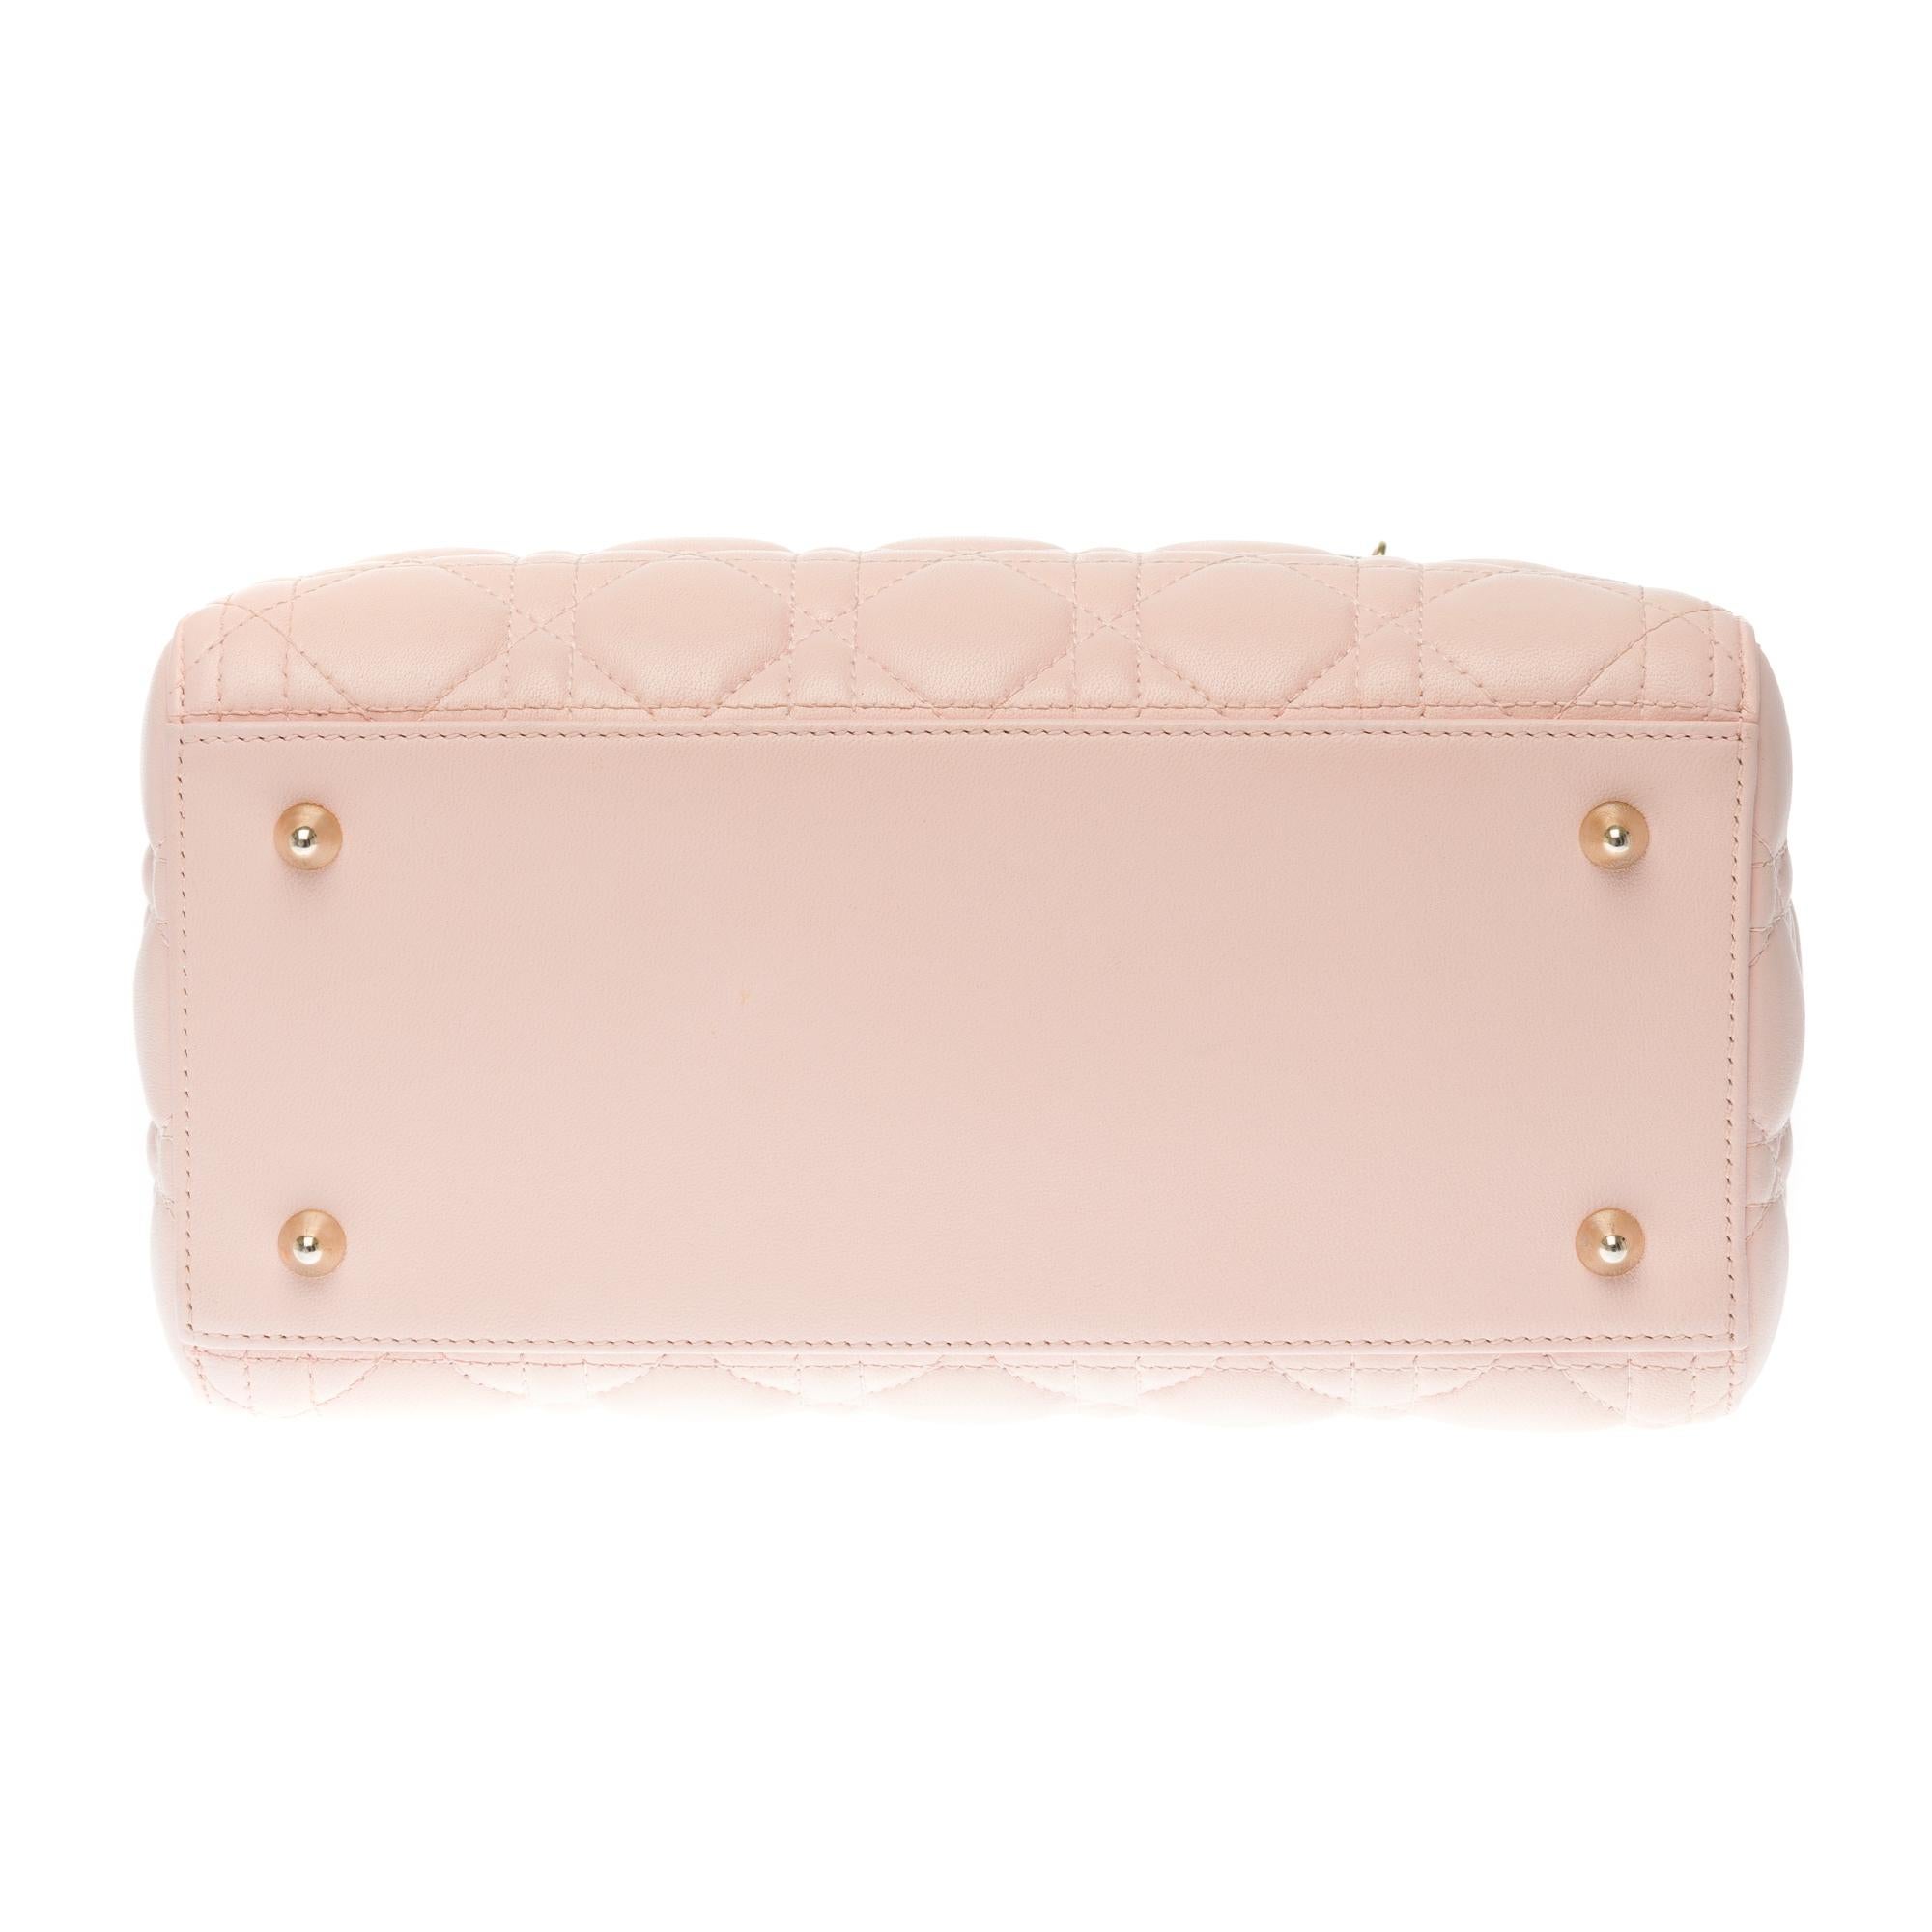  Christian Dior Lady Dior Medium size handbag in Pink cannage leather, GHW 1